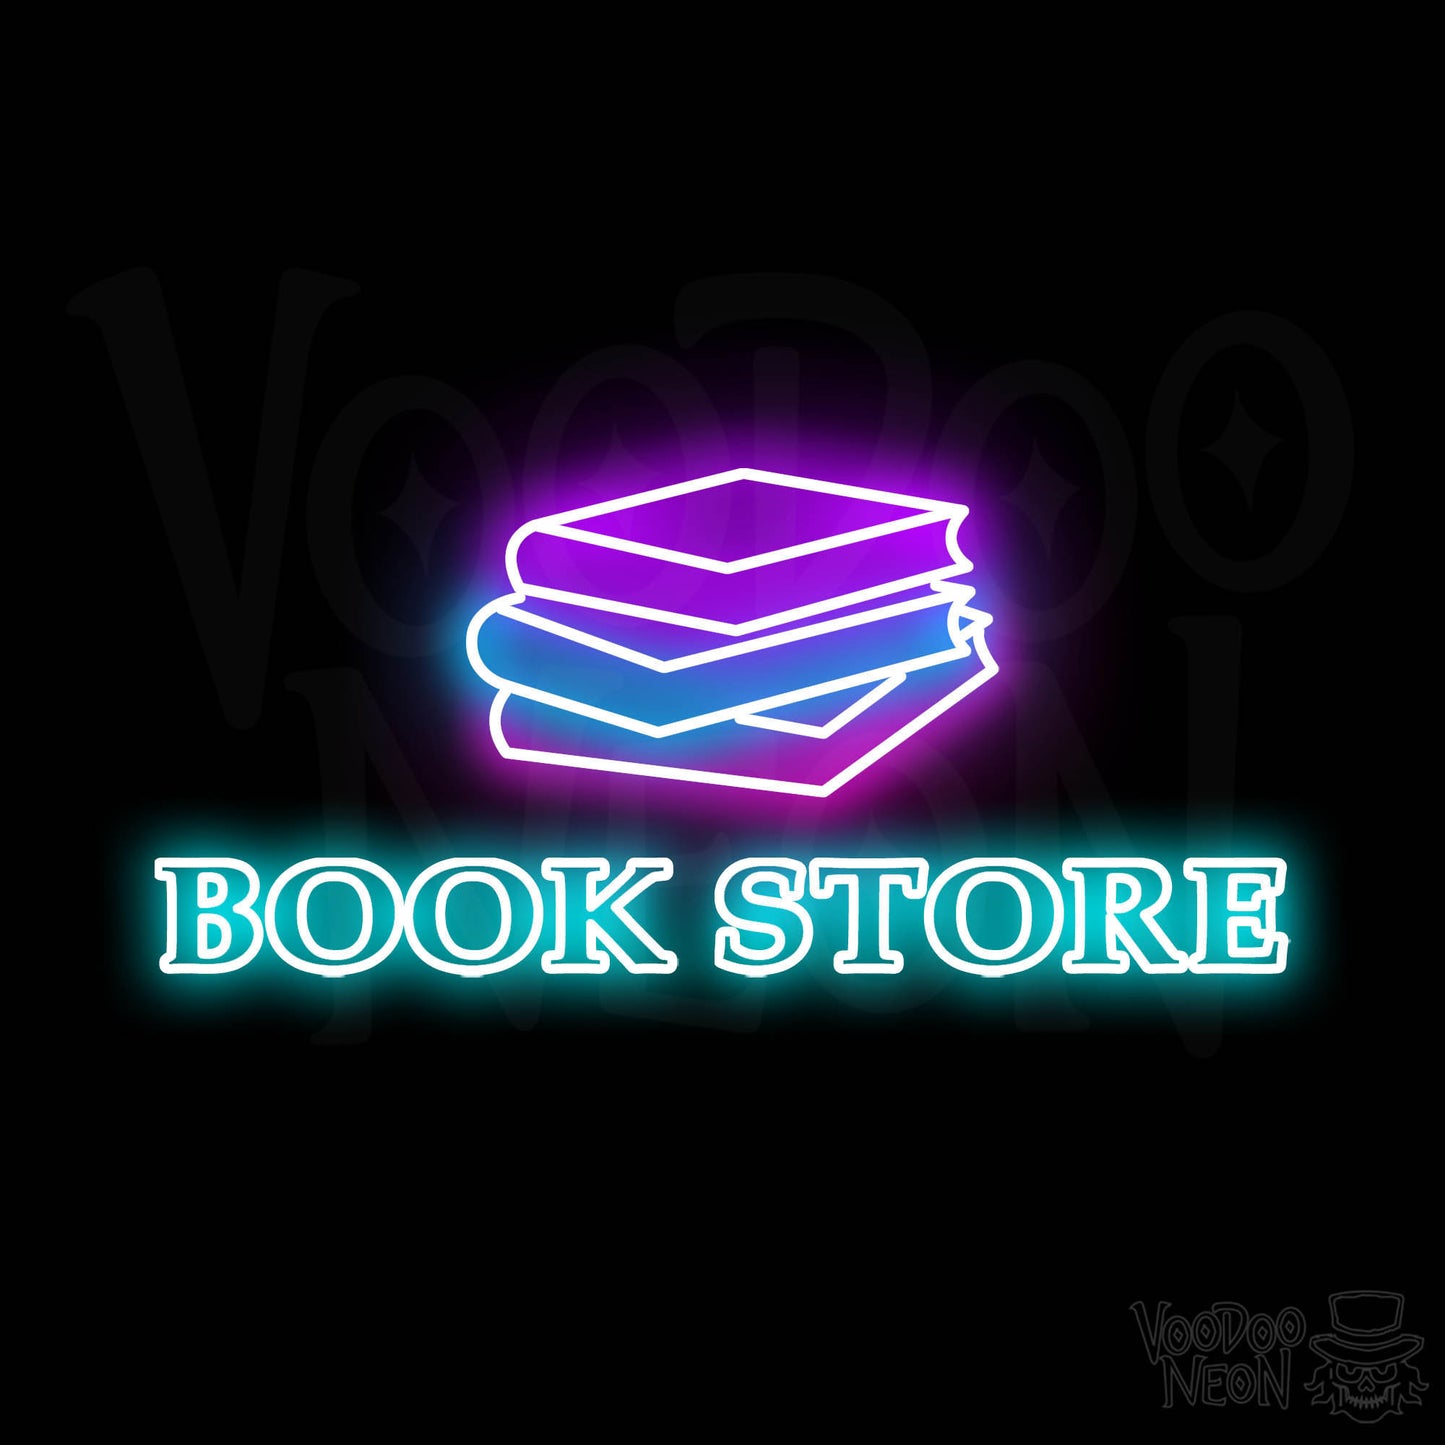 Book Store LED Neon - Multi-Color